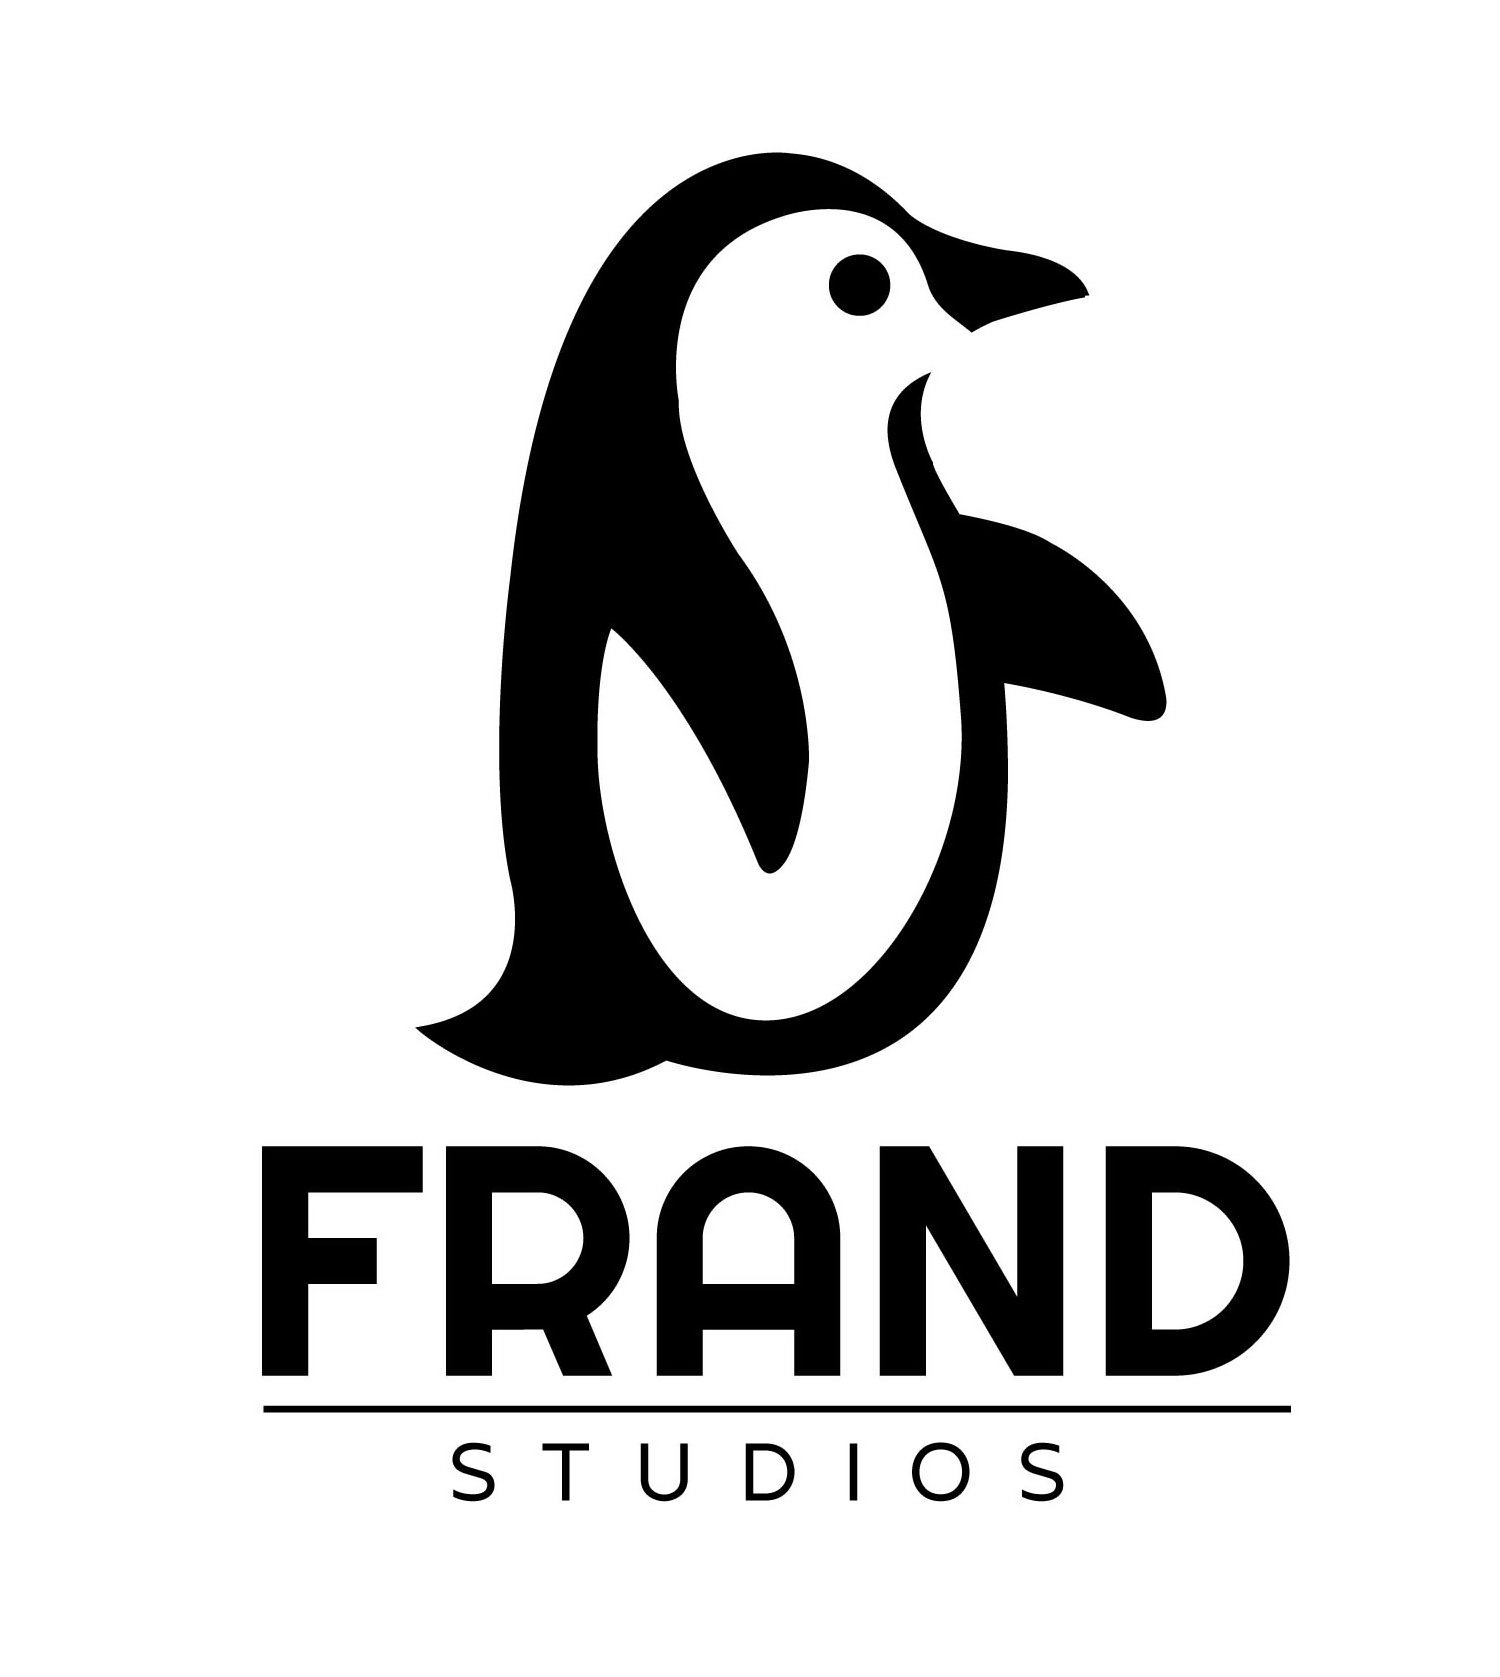  FRAND STUDIOS